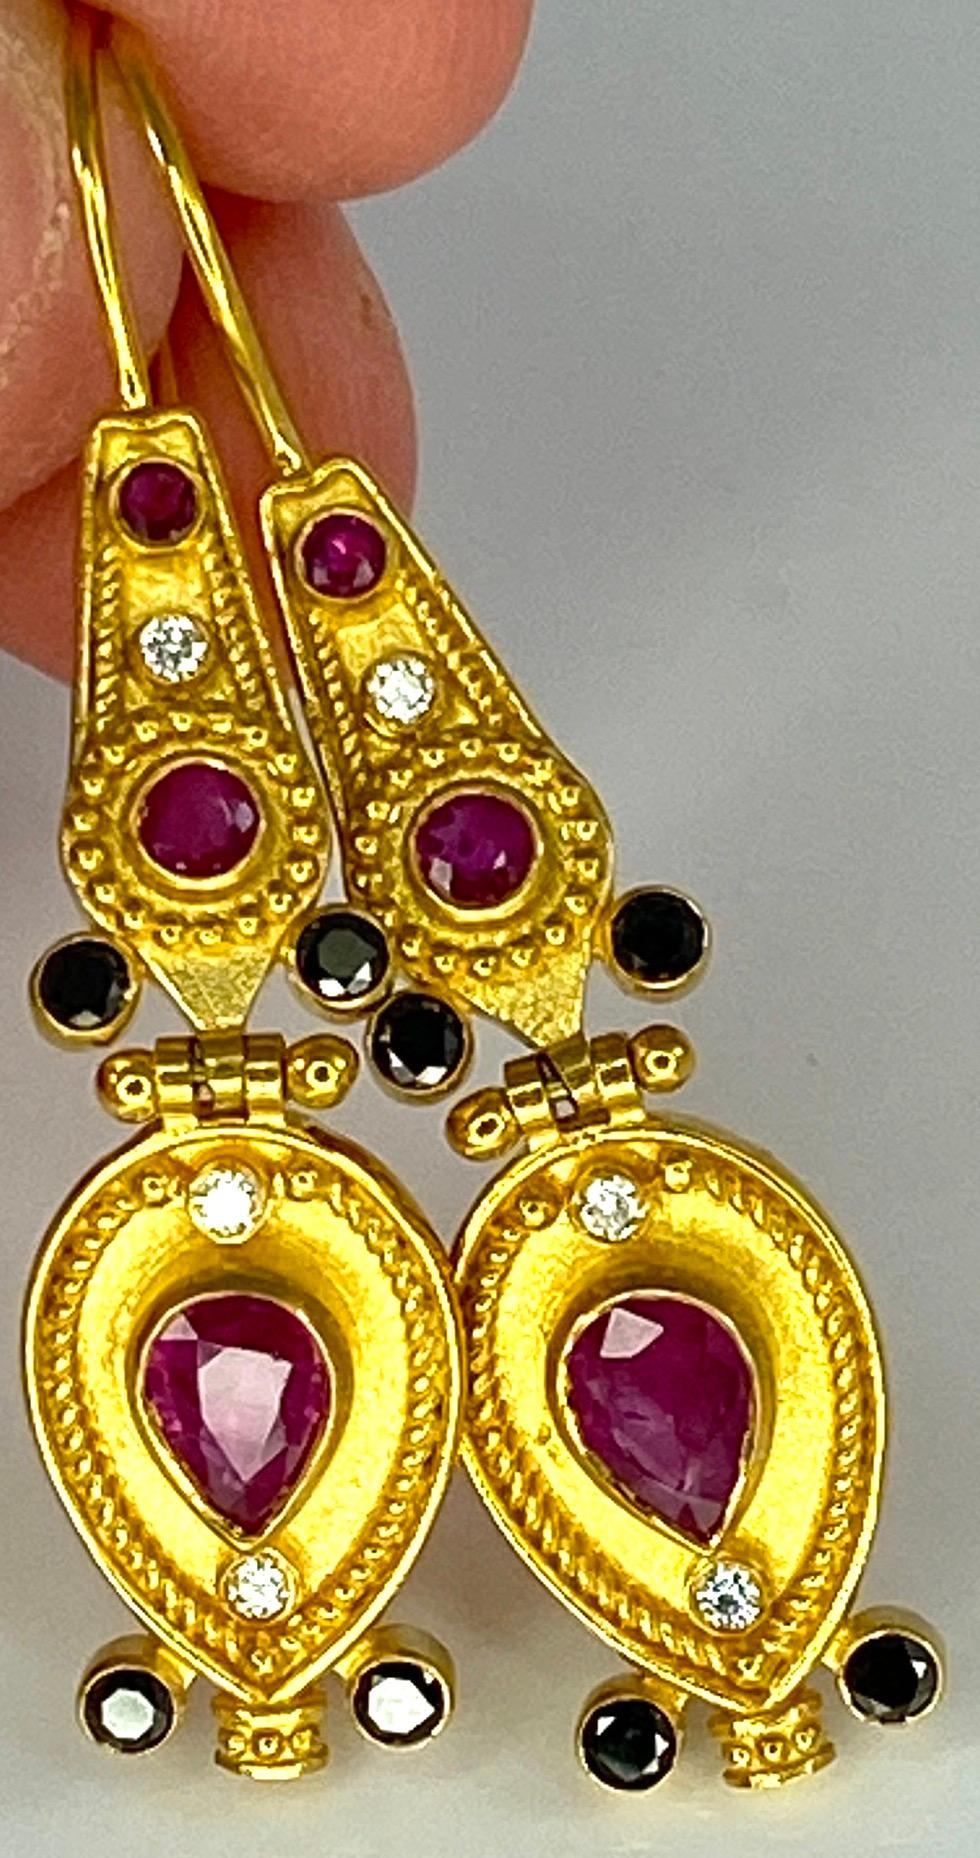 Die Ohrringe aus 18 Karat Gelbgold im byzantinischen Stil von S.Georgios werden in mikroskopischer Granulationsarbeit von Hand gefertigt und mit einem einzigartigen Samtuntergrund versehen. 
Das wunderschöne Paar besteht aus 2 natürlichen Rubinen im